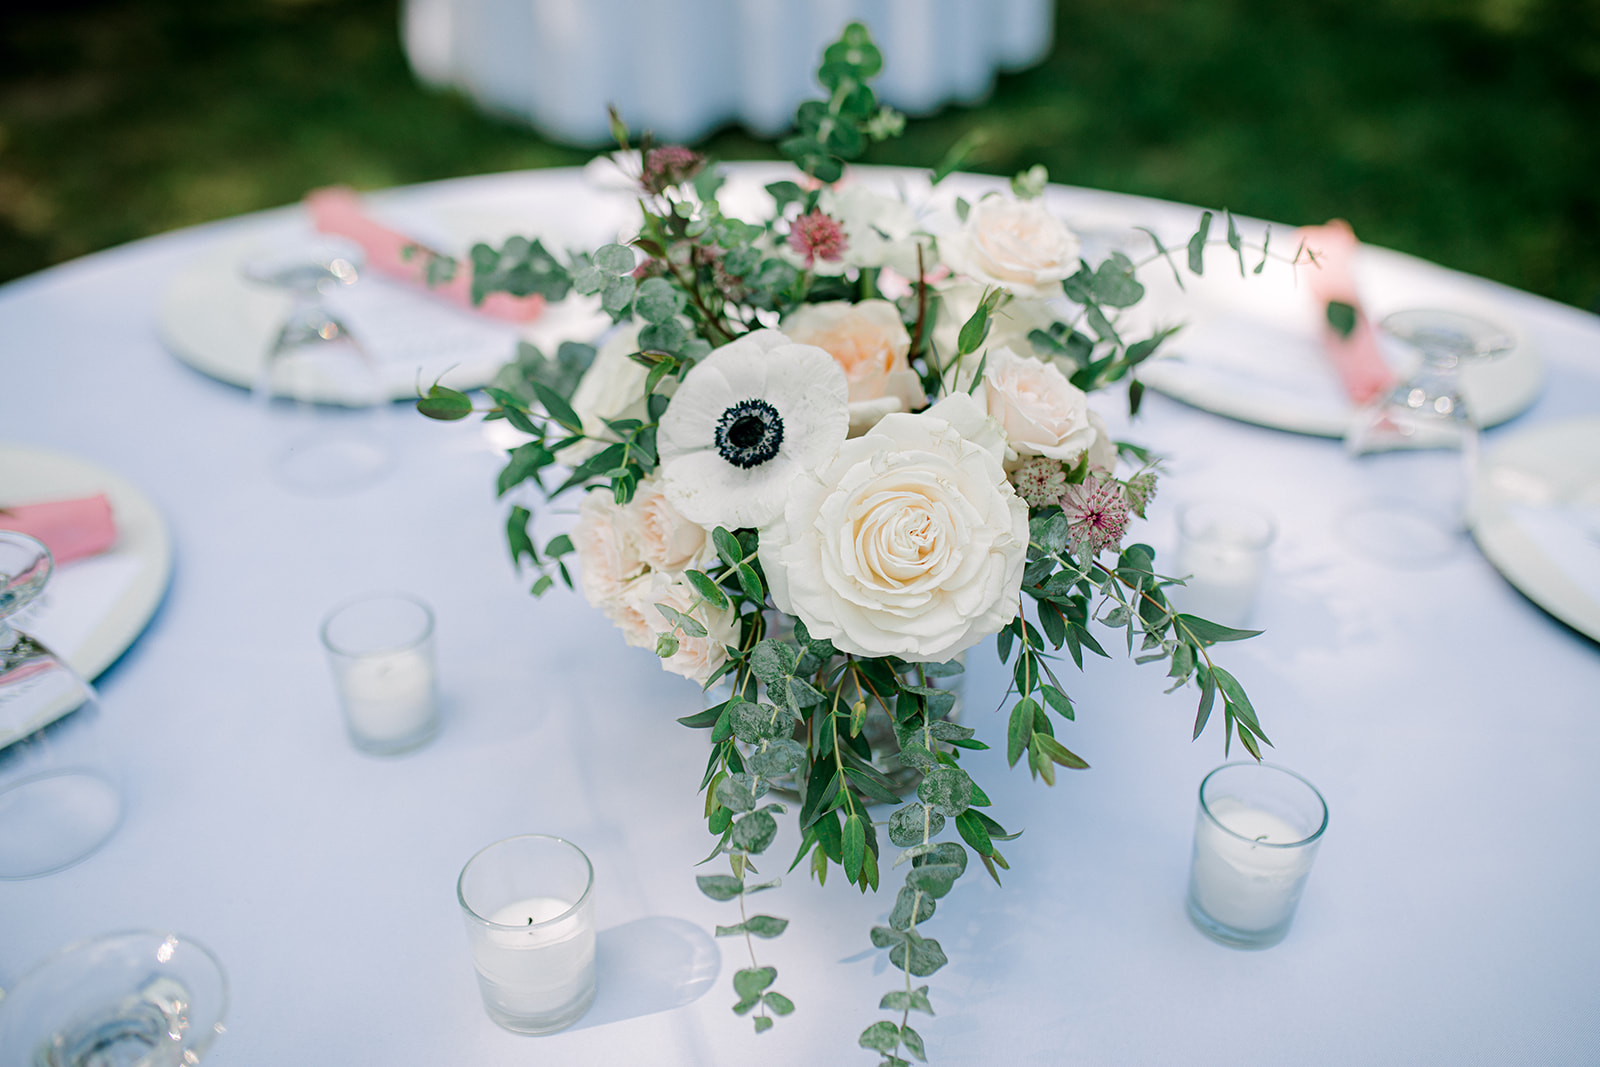 Anemone wedding flower centerpieces | Nashville Bride Guide